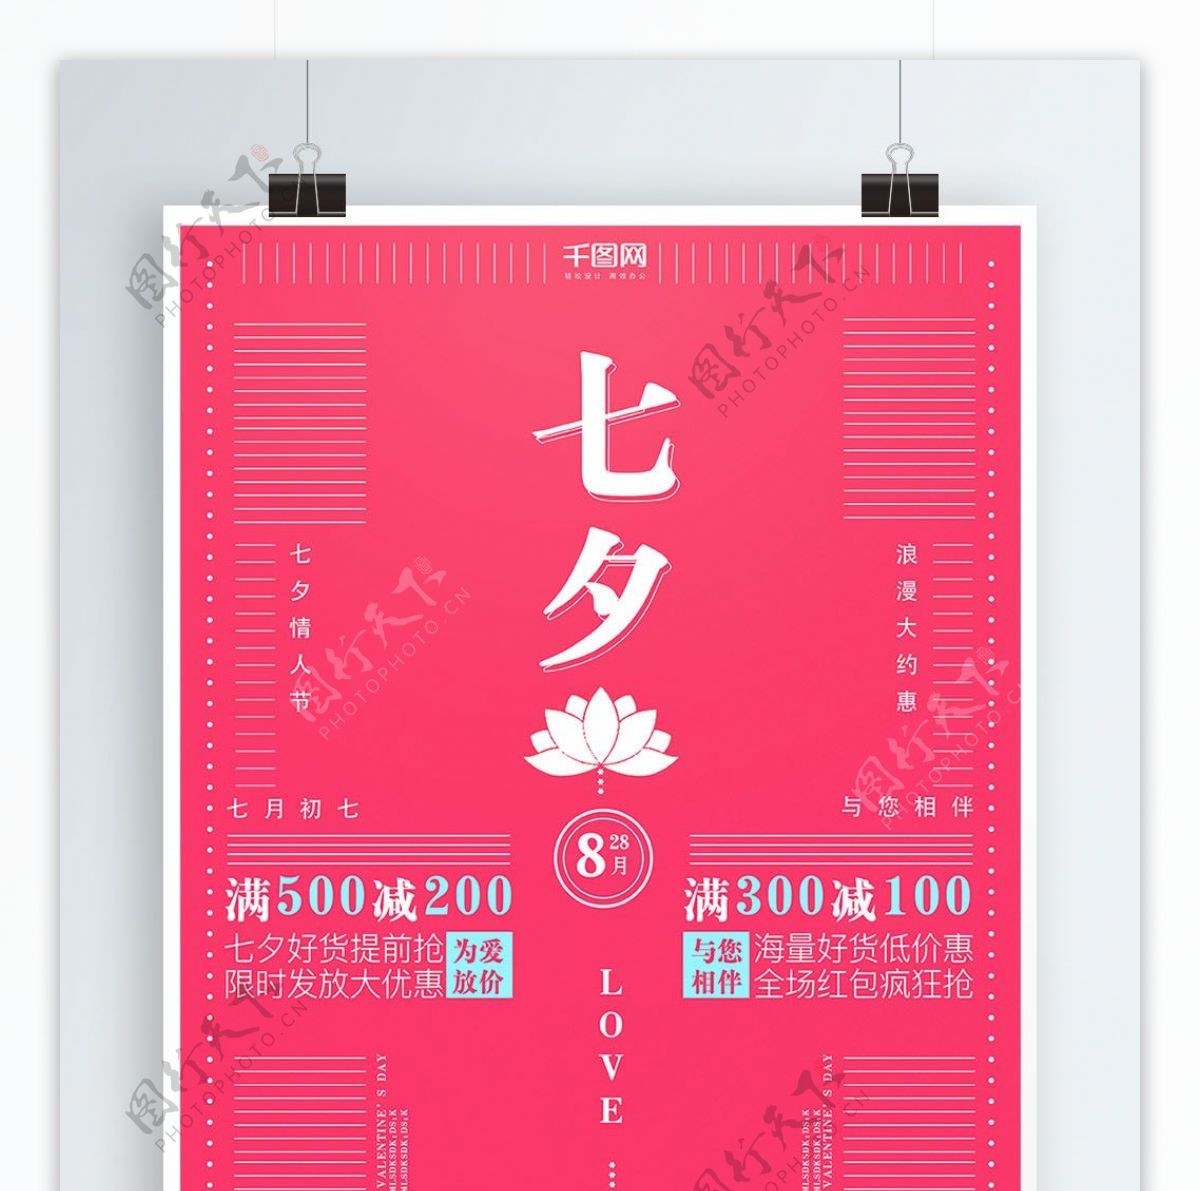 实验式七夕节日活动促销海报设计PSD模板